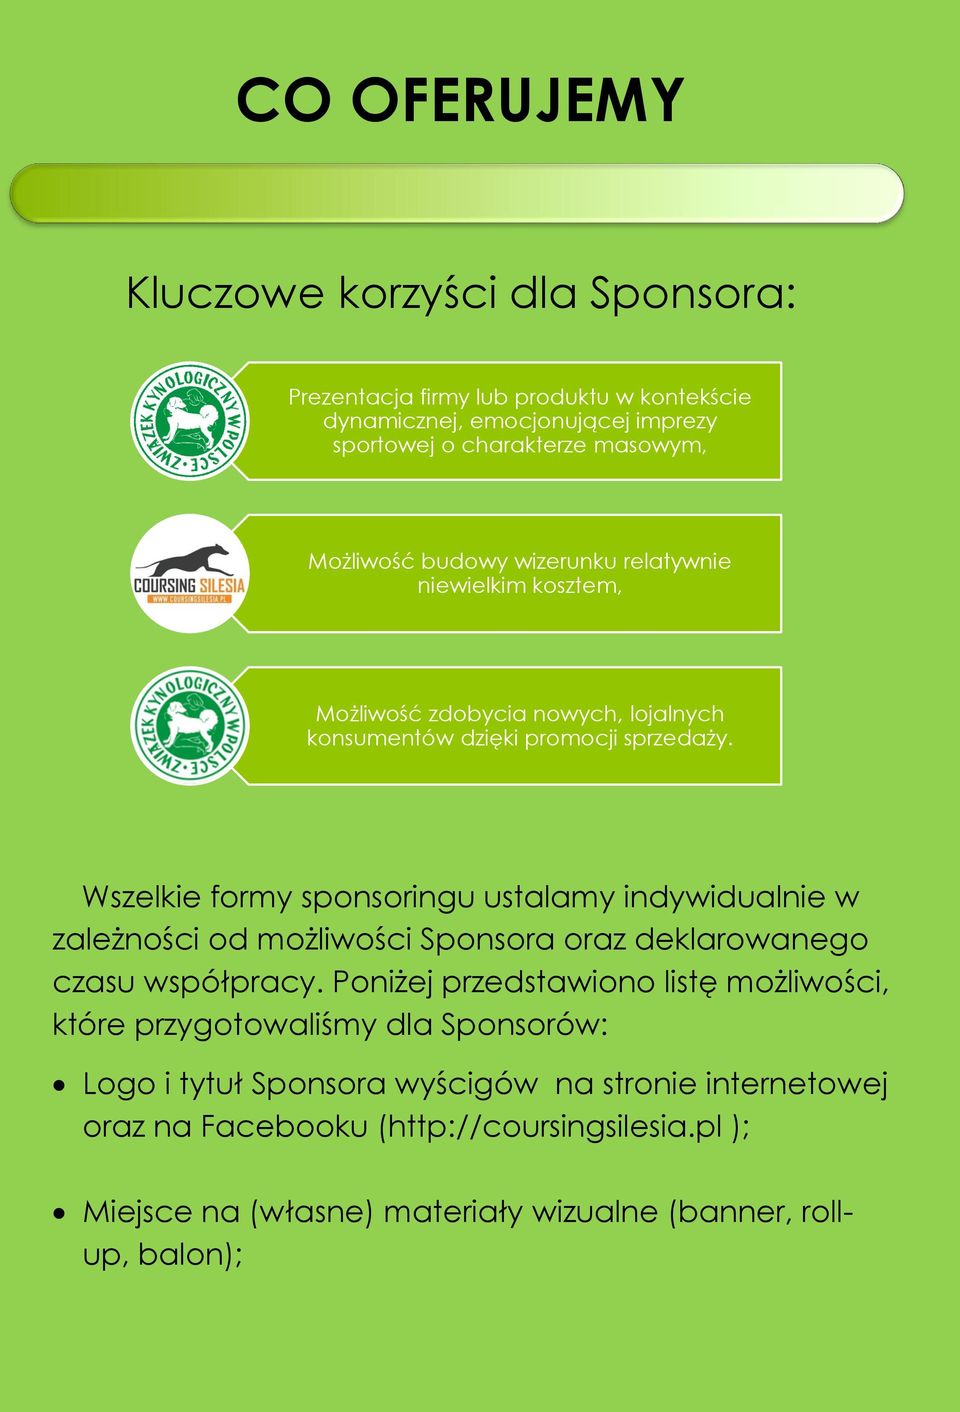 Wszelkie formy sponsoringu ustalamy indywidualnie w zależności od możliwości Sponsora oraz deklarowanego czasu współpracy.